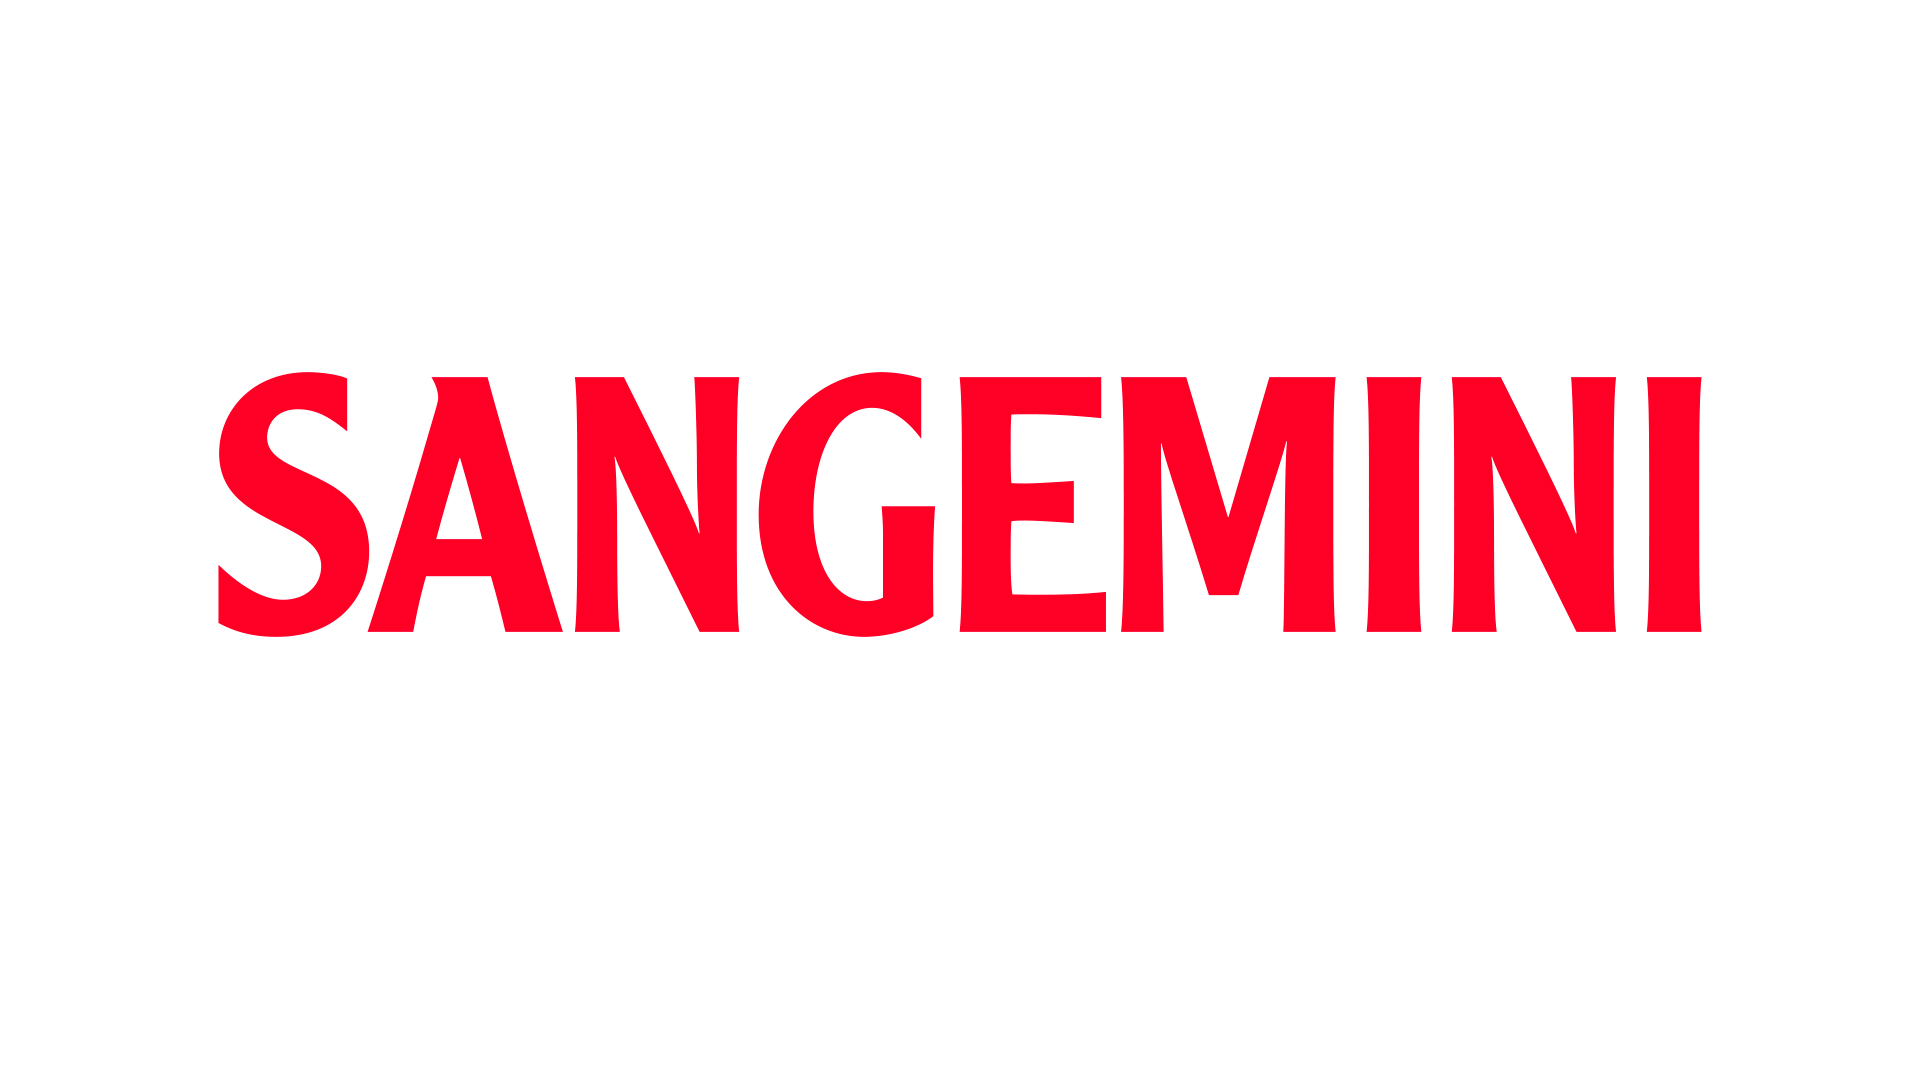 Sangemini old logo red a